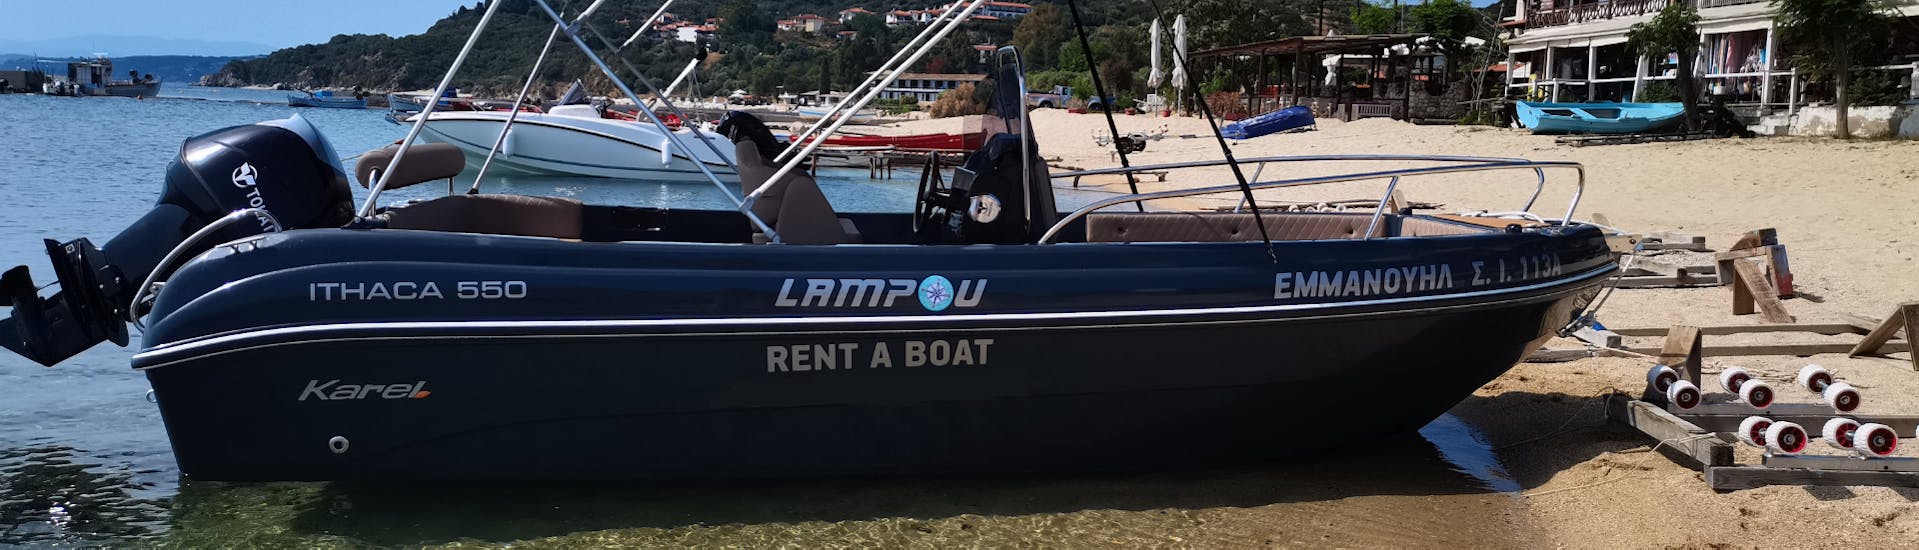 Nuestro barco para 8 personas te espera durante el Alquiler de Barcos en Ouranoupoli (hasta 8 personas) sin Licencia con Rent a Boat Lampou.